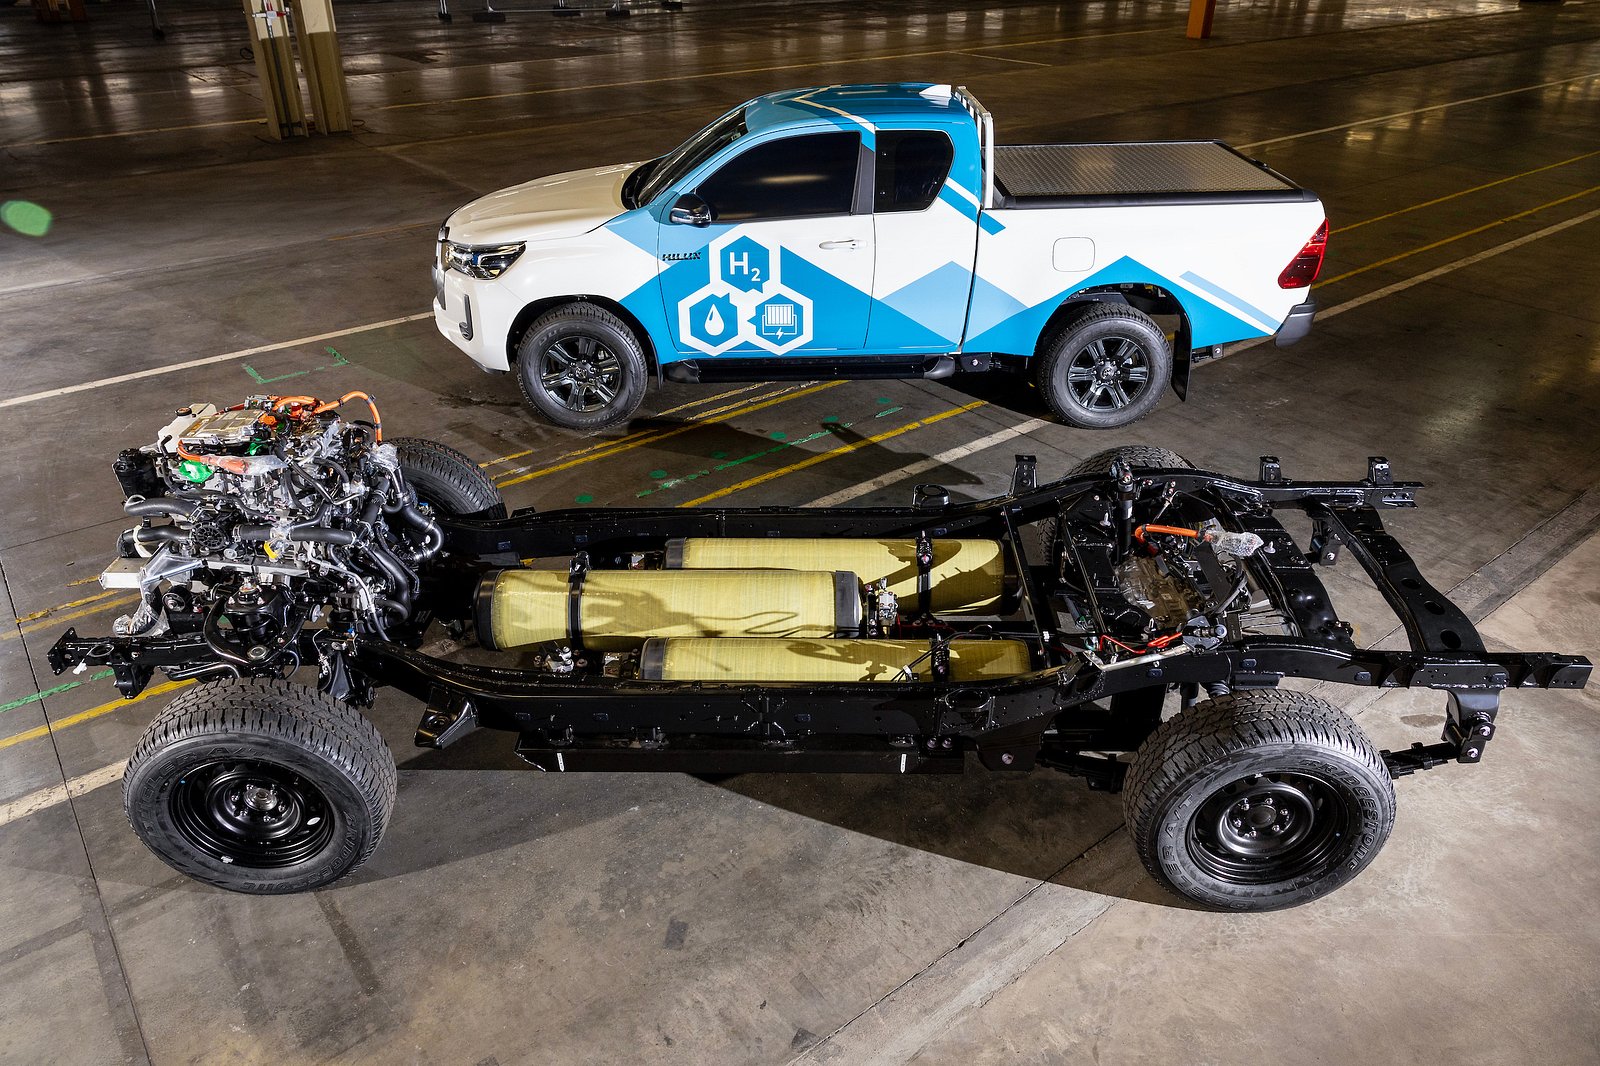 Toyota Hilux bản lạ: Chung công nghệ mẫu xe nạp đầy đi hơn 1300km, thứ thải ra uống được - Ảnh 3.